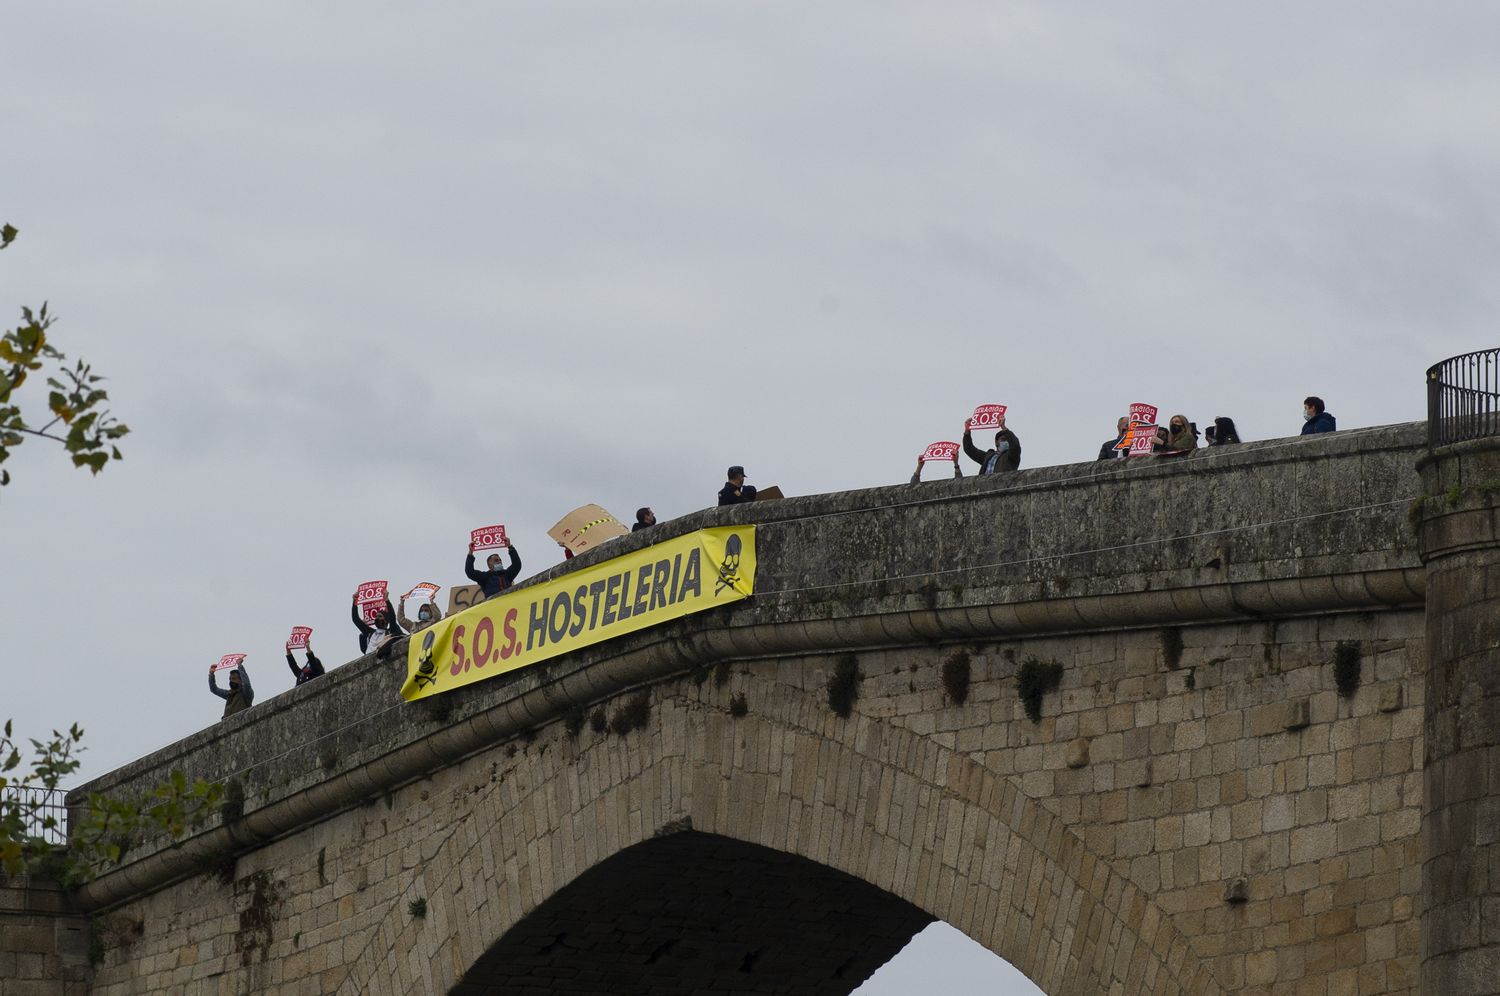 Ourense 4/11/20
Protesta del sector hostelero en el puente romano aprovechando el paso de la vuelta ciclista

Fotos Martiño Pinal